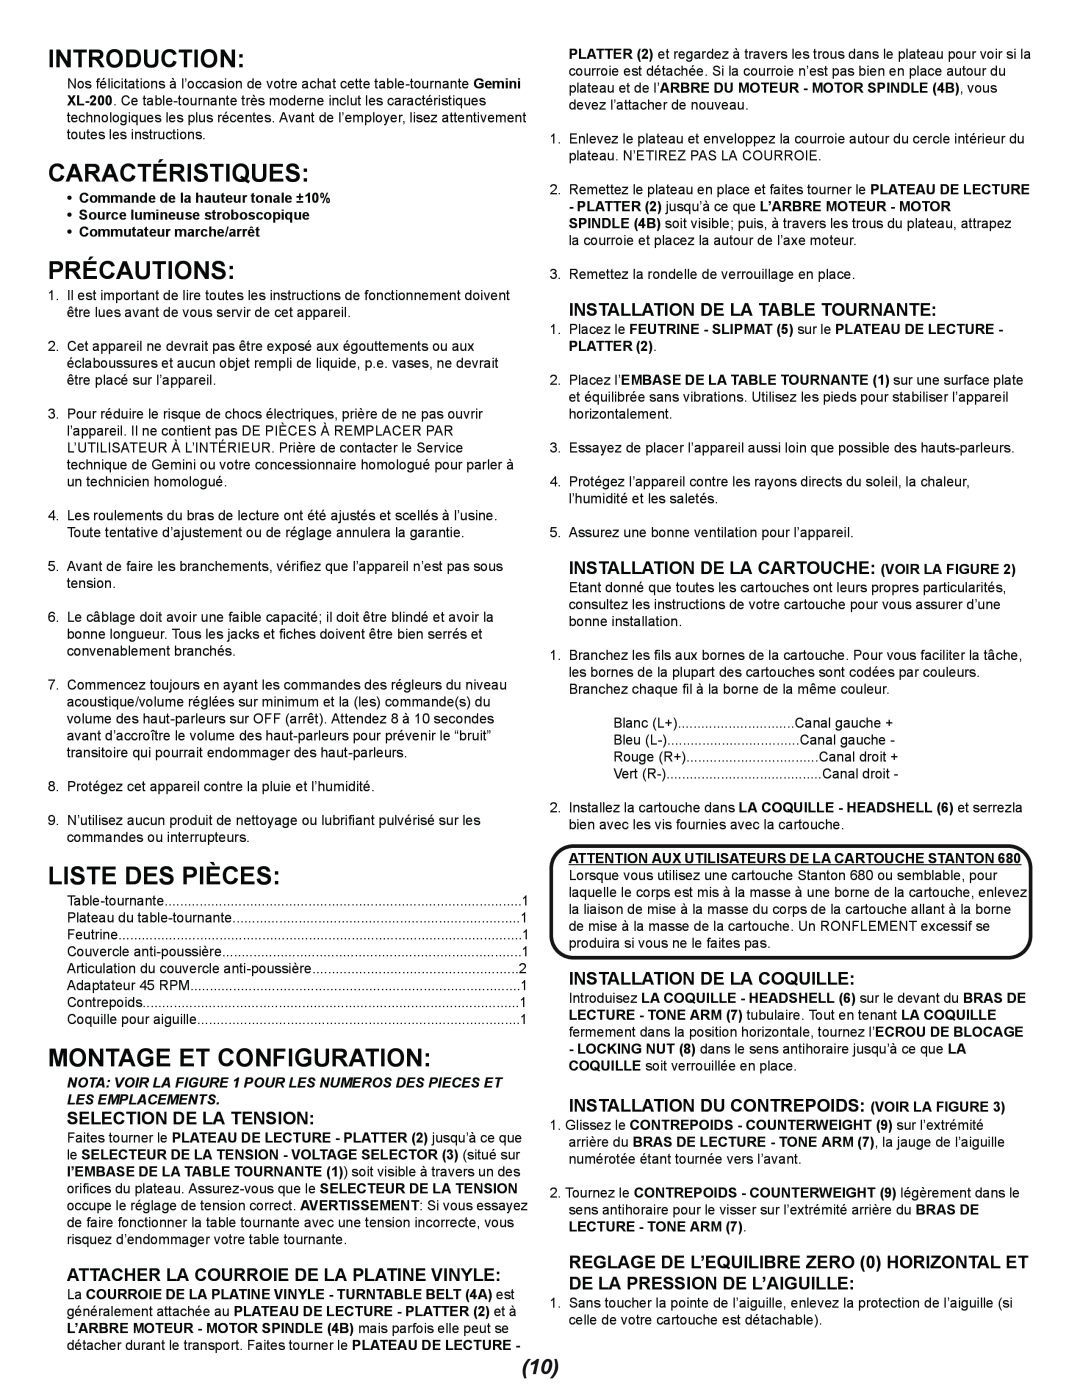 Gemini XL-200 manual Caractéristiques, Précautions, Liste Des Pièces, Montage Et Configuration, Selection De La Tension 